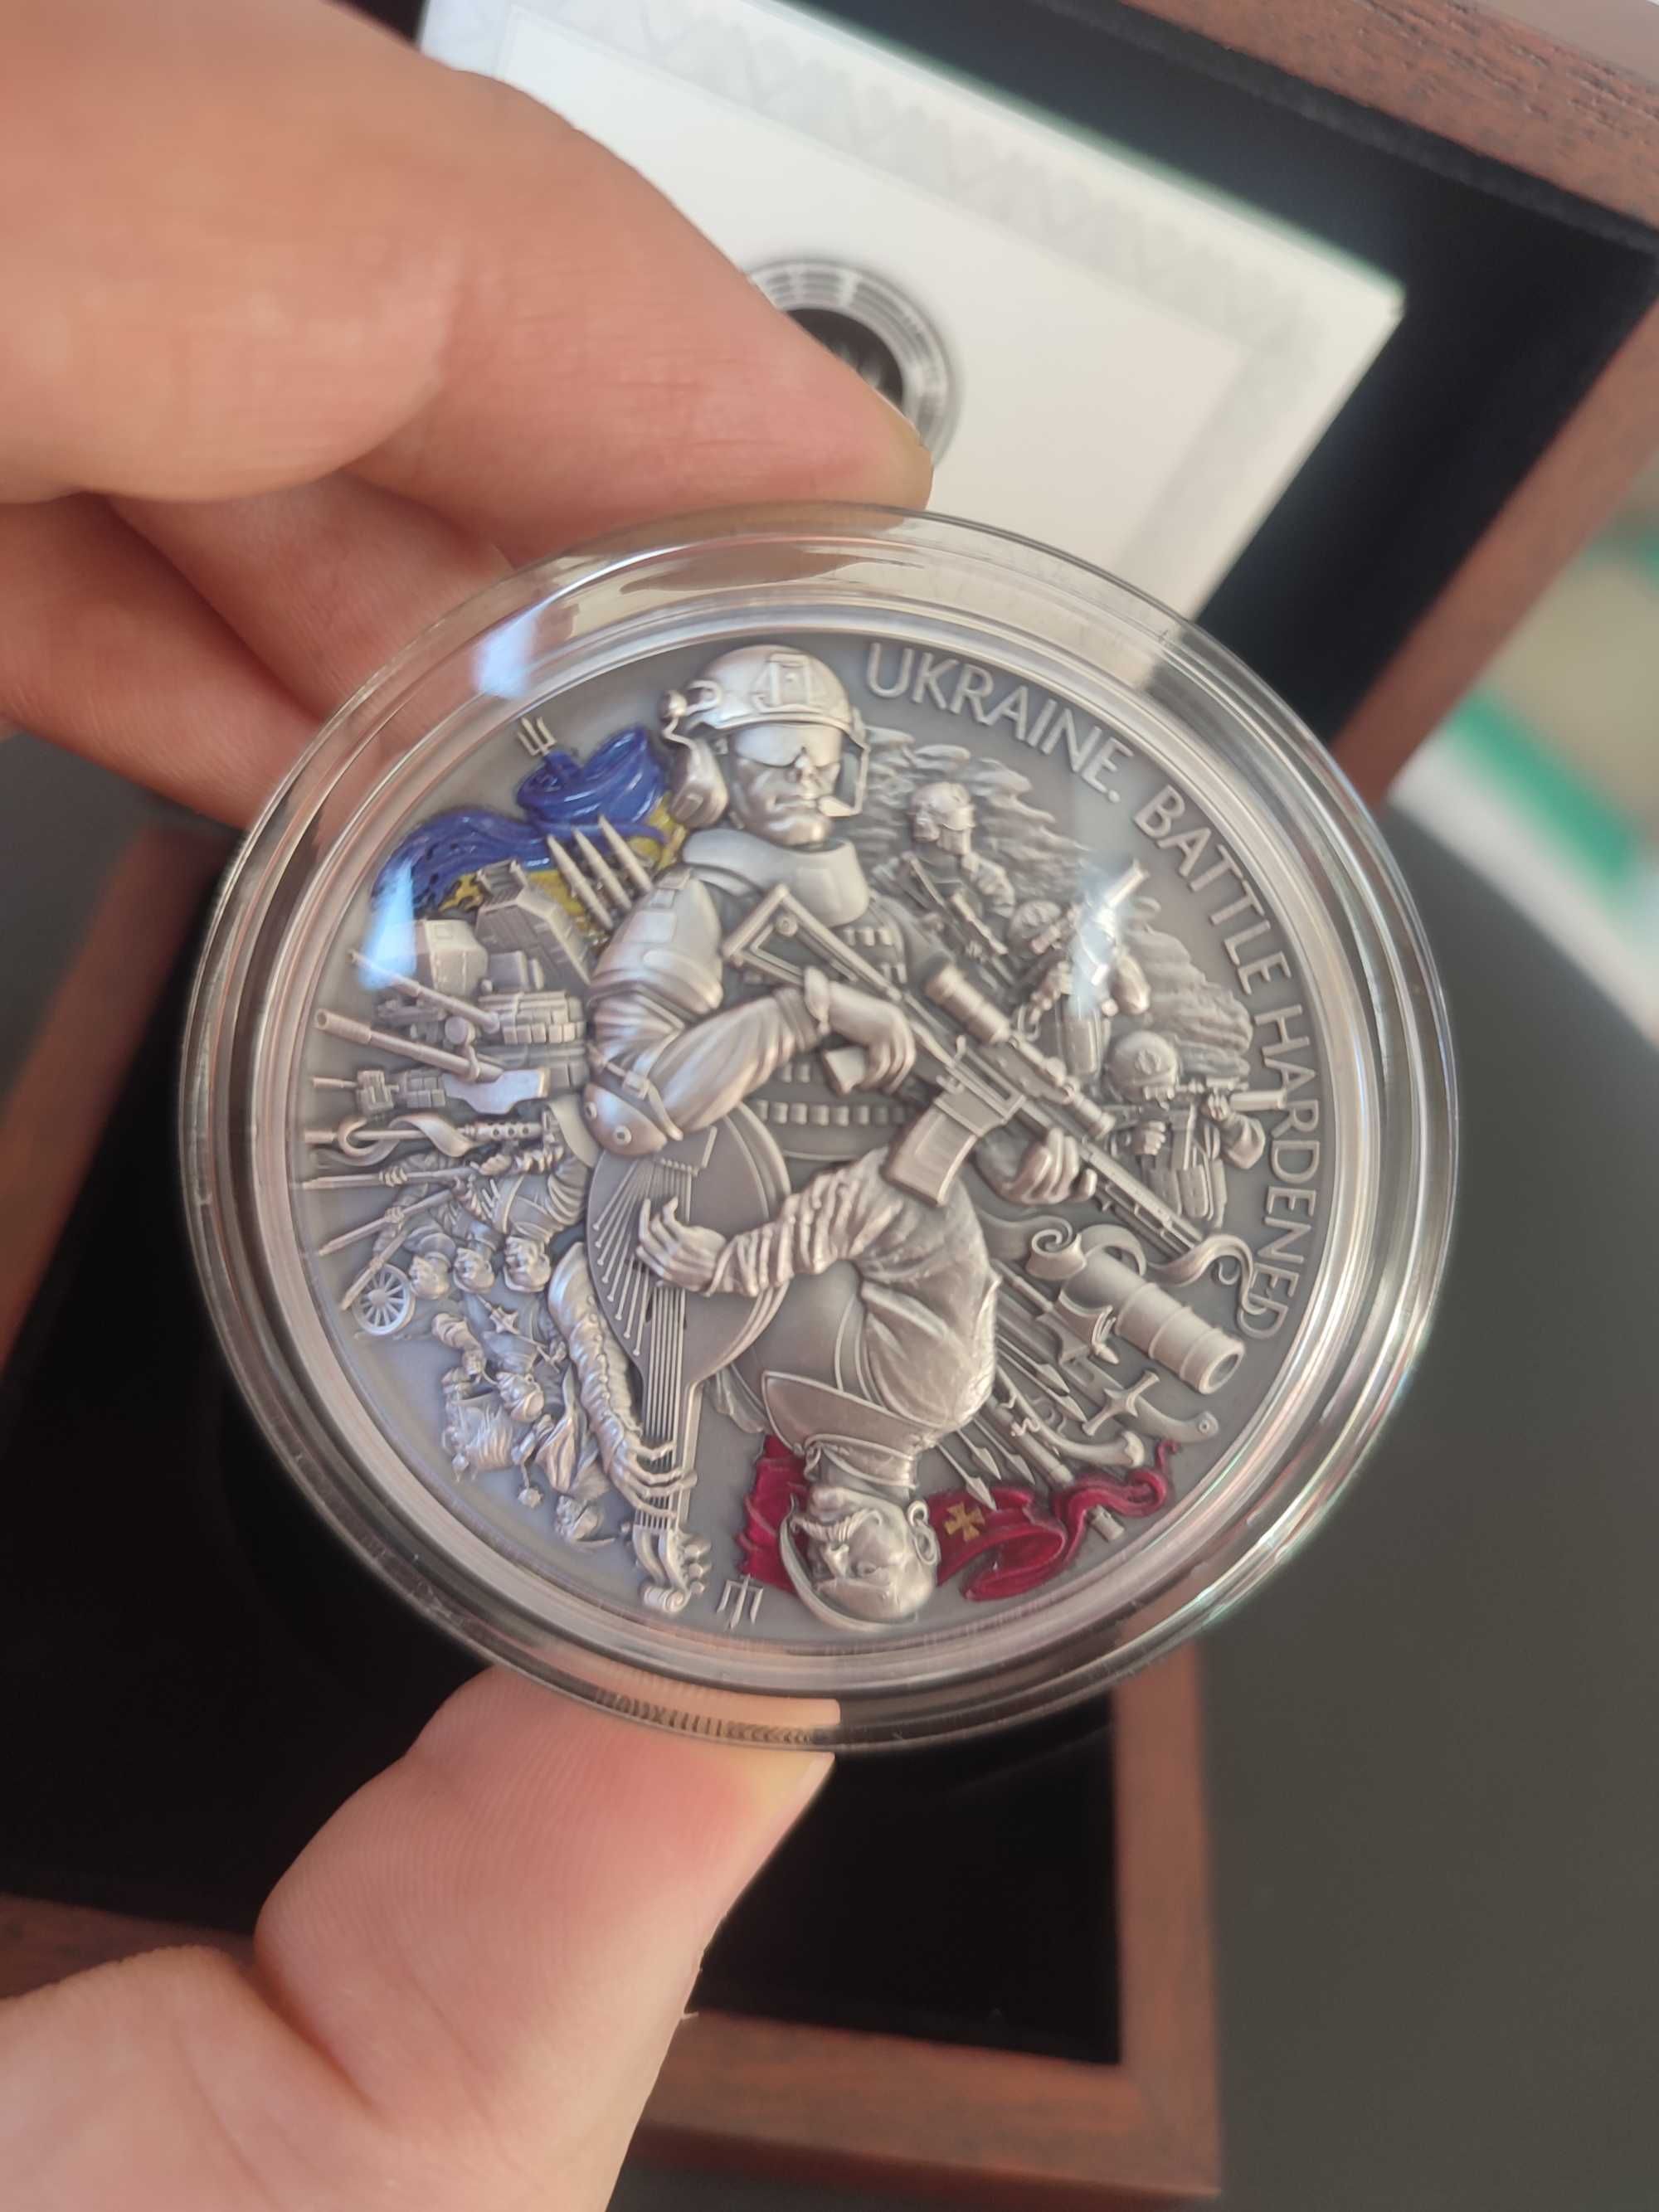 Срібна монета "Україна. Загартована в боях" 62,2 грам, 2024 рік